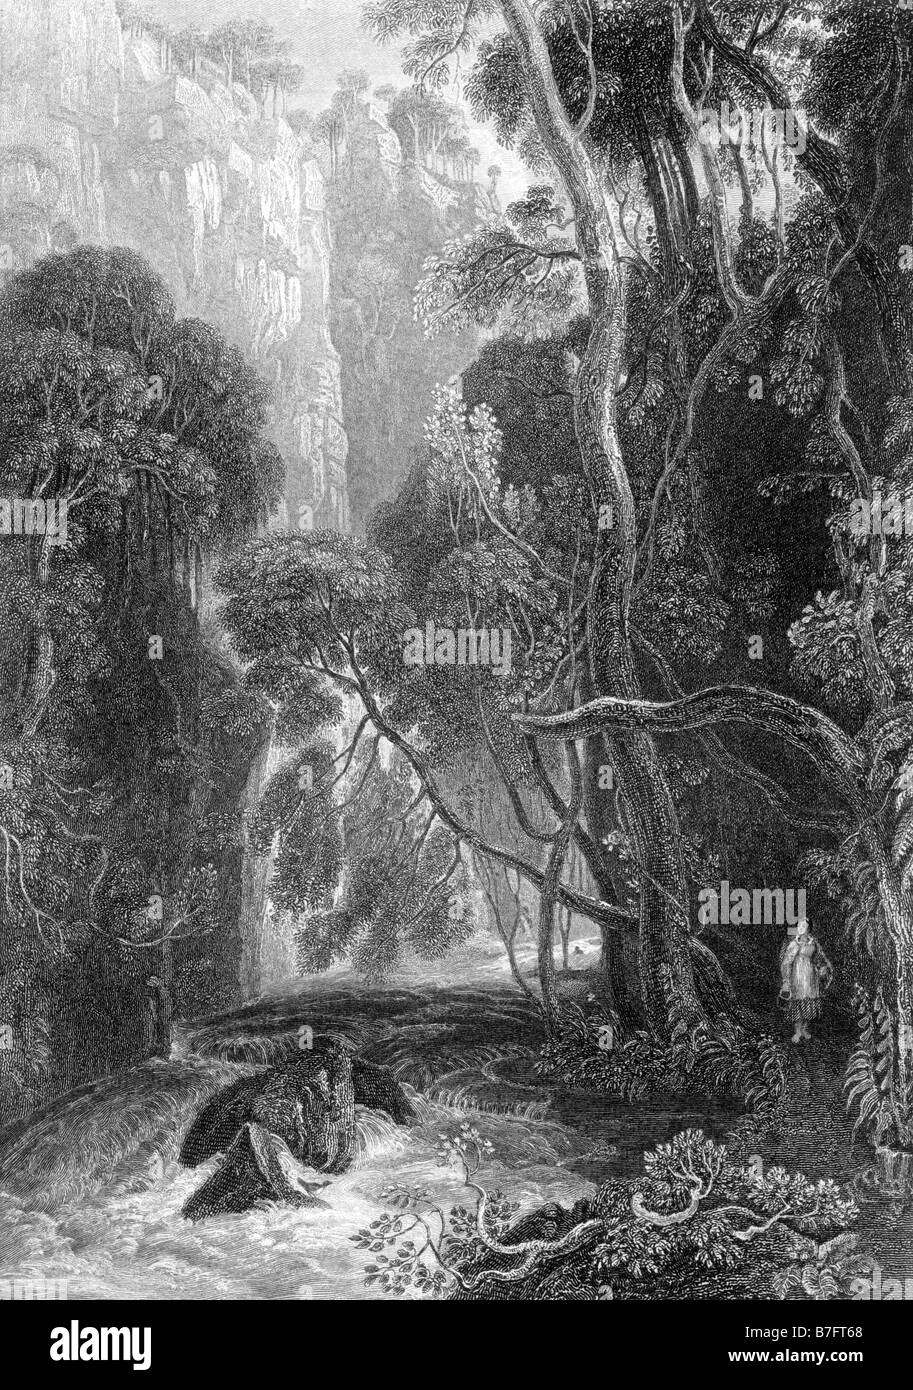 Scène sur la rivière Doon Gravure de David Octavius Hill 1802 à 1870 19ème siècle Illustration Banque D'Images